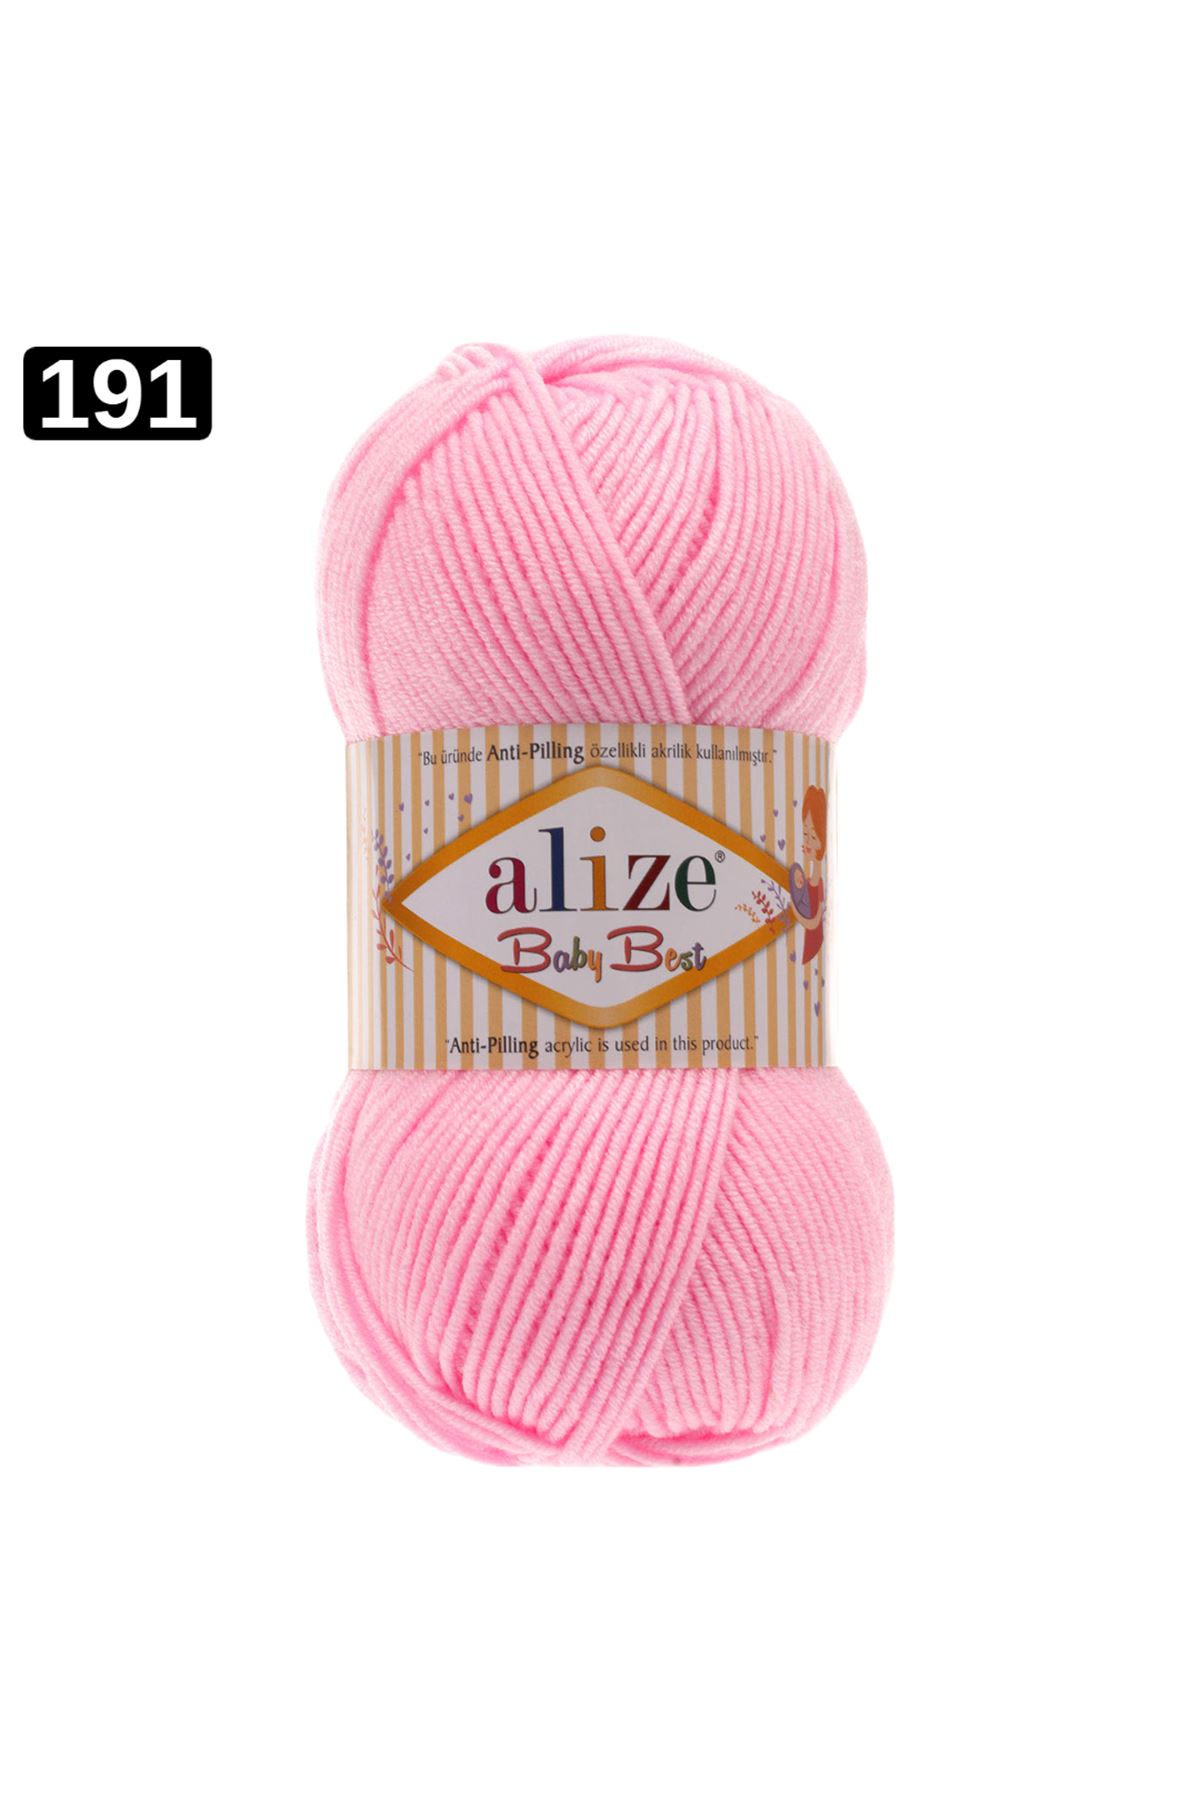 Alize Baby Best Renk No: 191